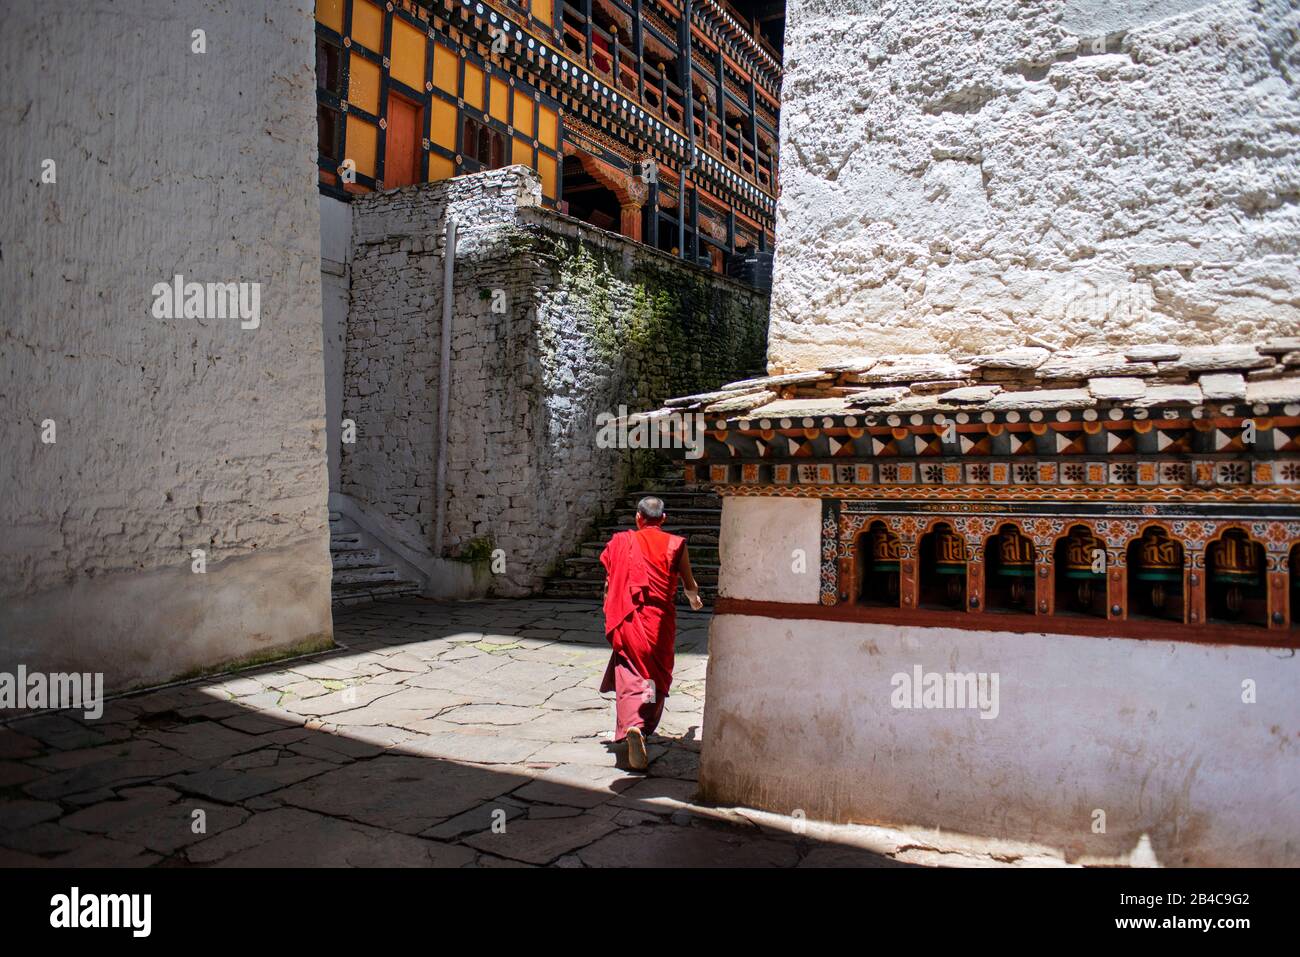 Inside Paro Dzong Rinpung Dzong Drukpa Kagyu Buddhist monastery national museum and fortress, Paro, Bhutan Stock Photo